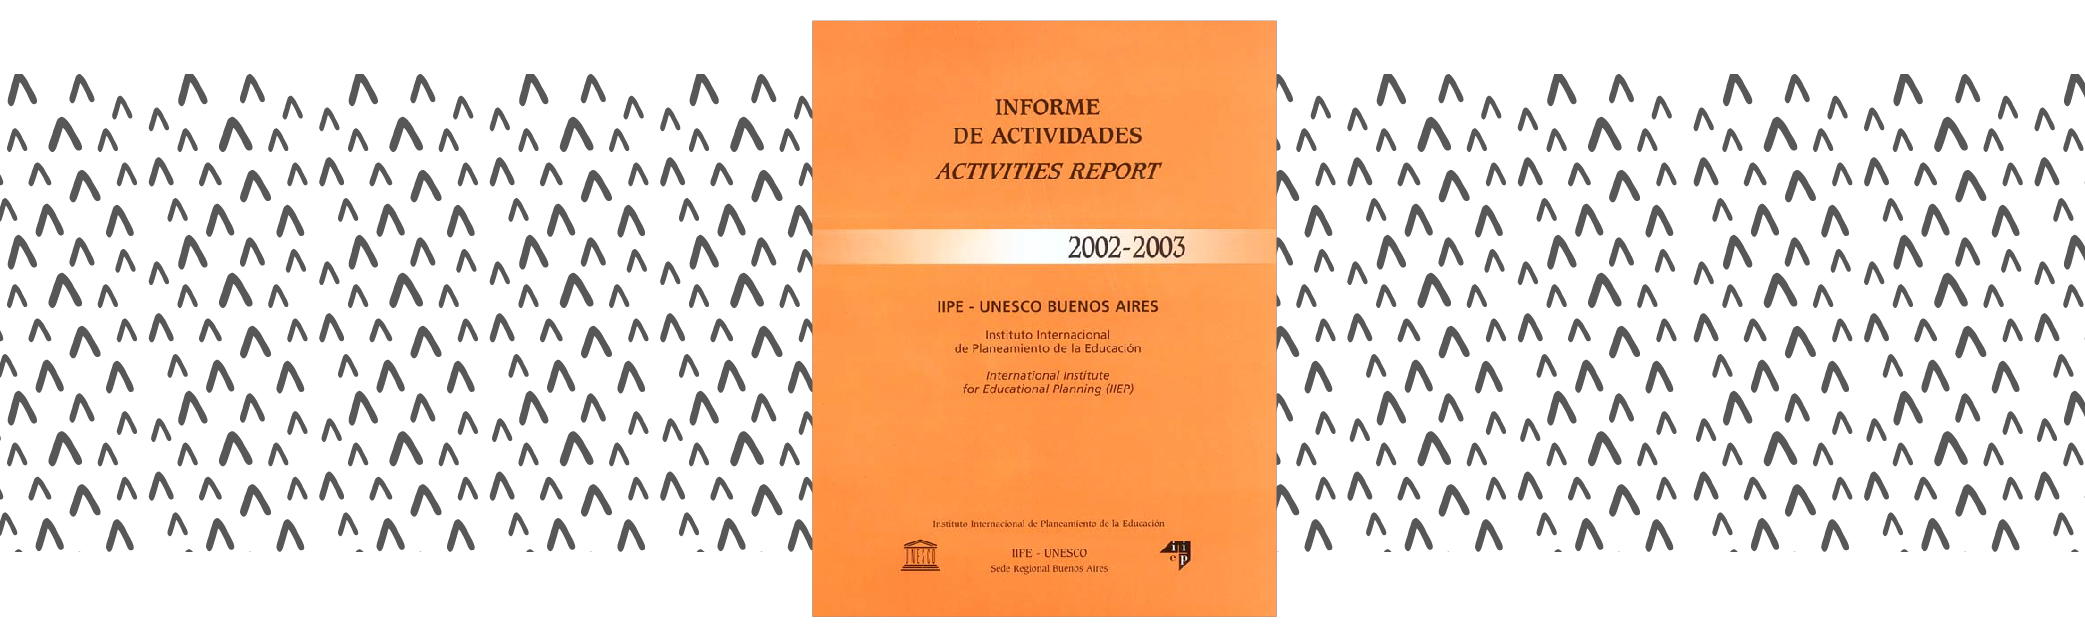 Informe de actividades 2002